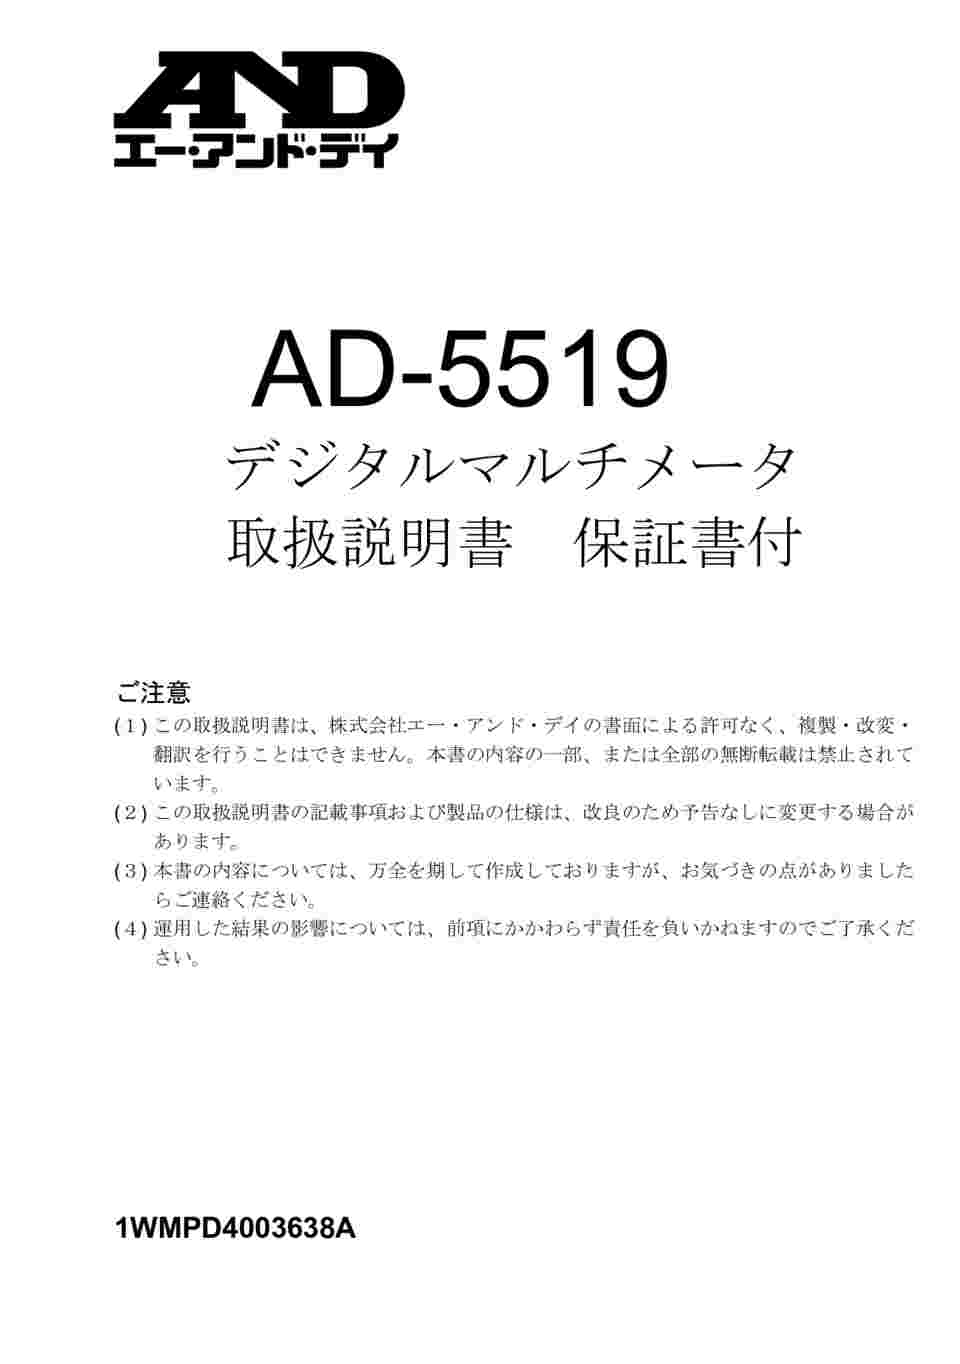 63-2577-74 デジタルマルチメーター (PC接続型) AD-5519 【AXEL】 アズワン